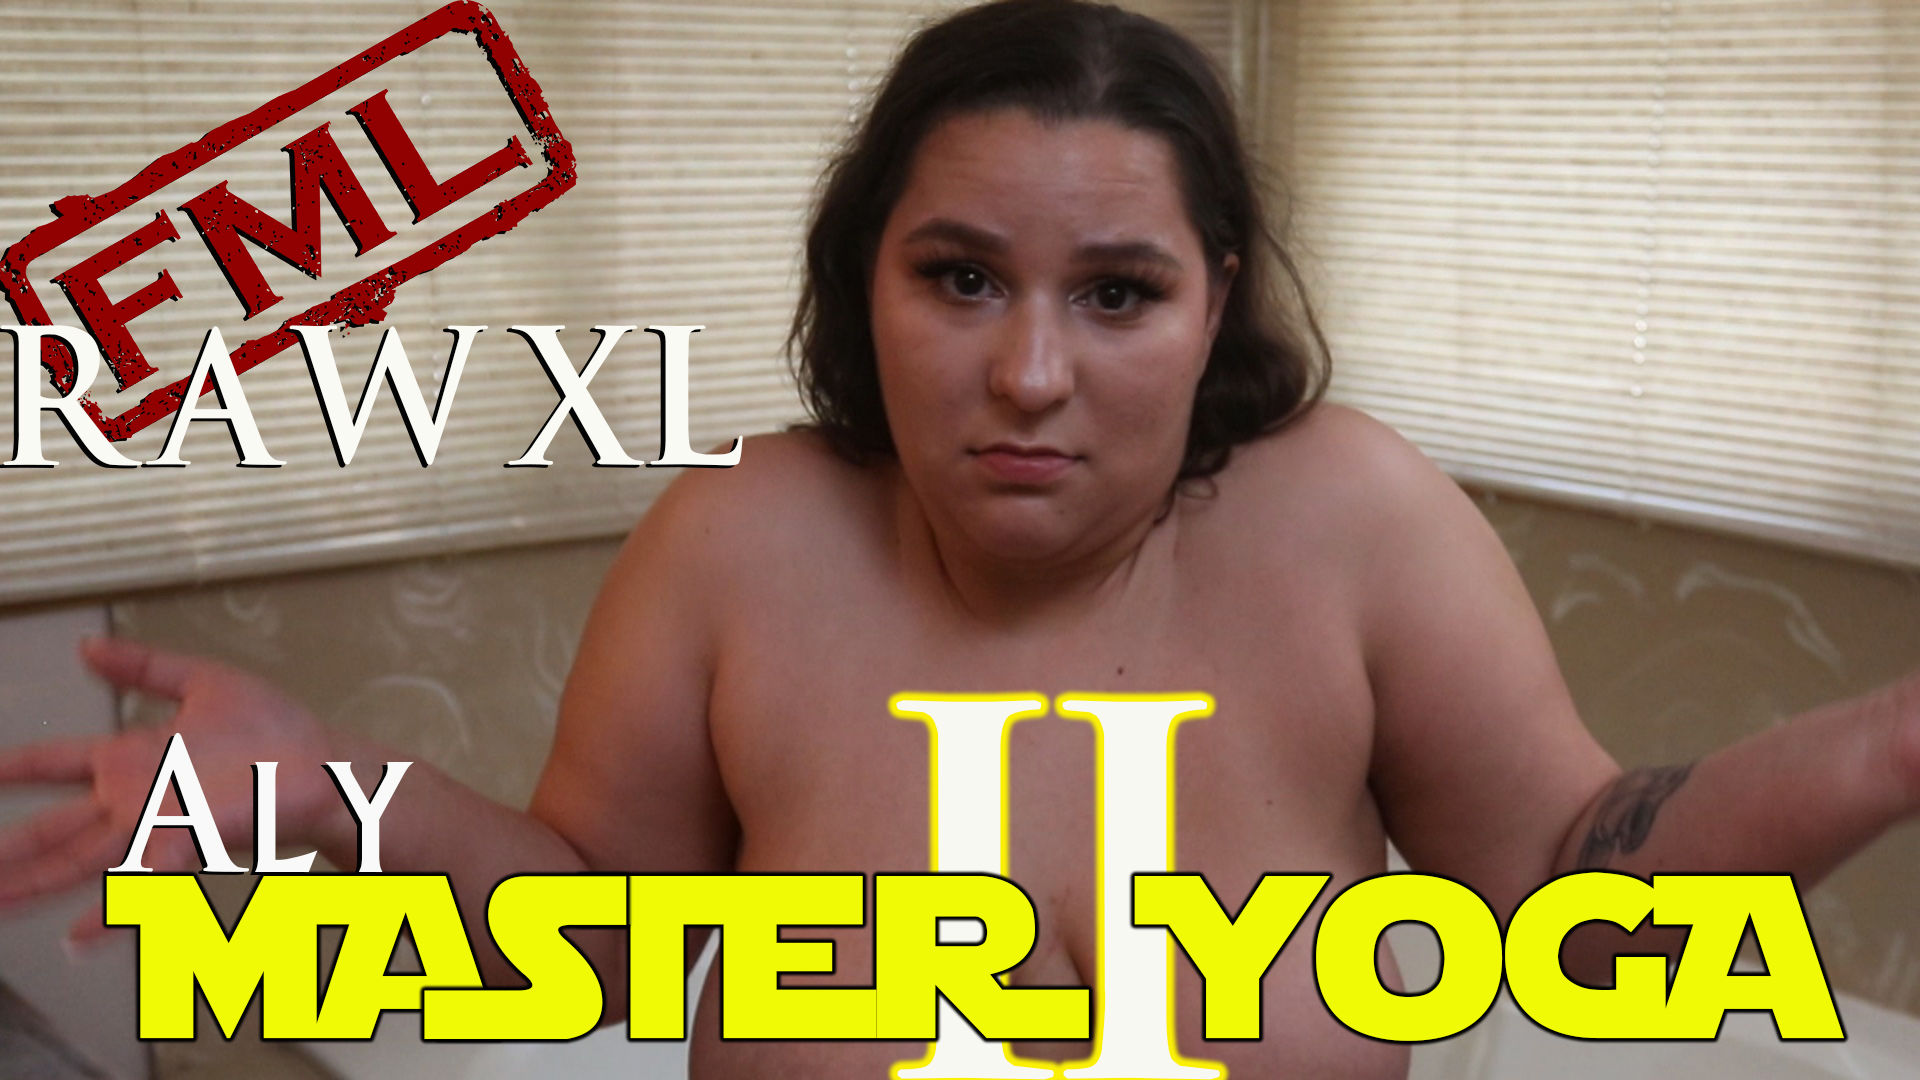 FML RAW XL: Master Yoga (Aly Edition)